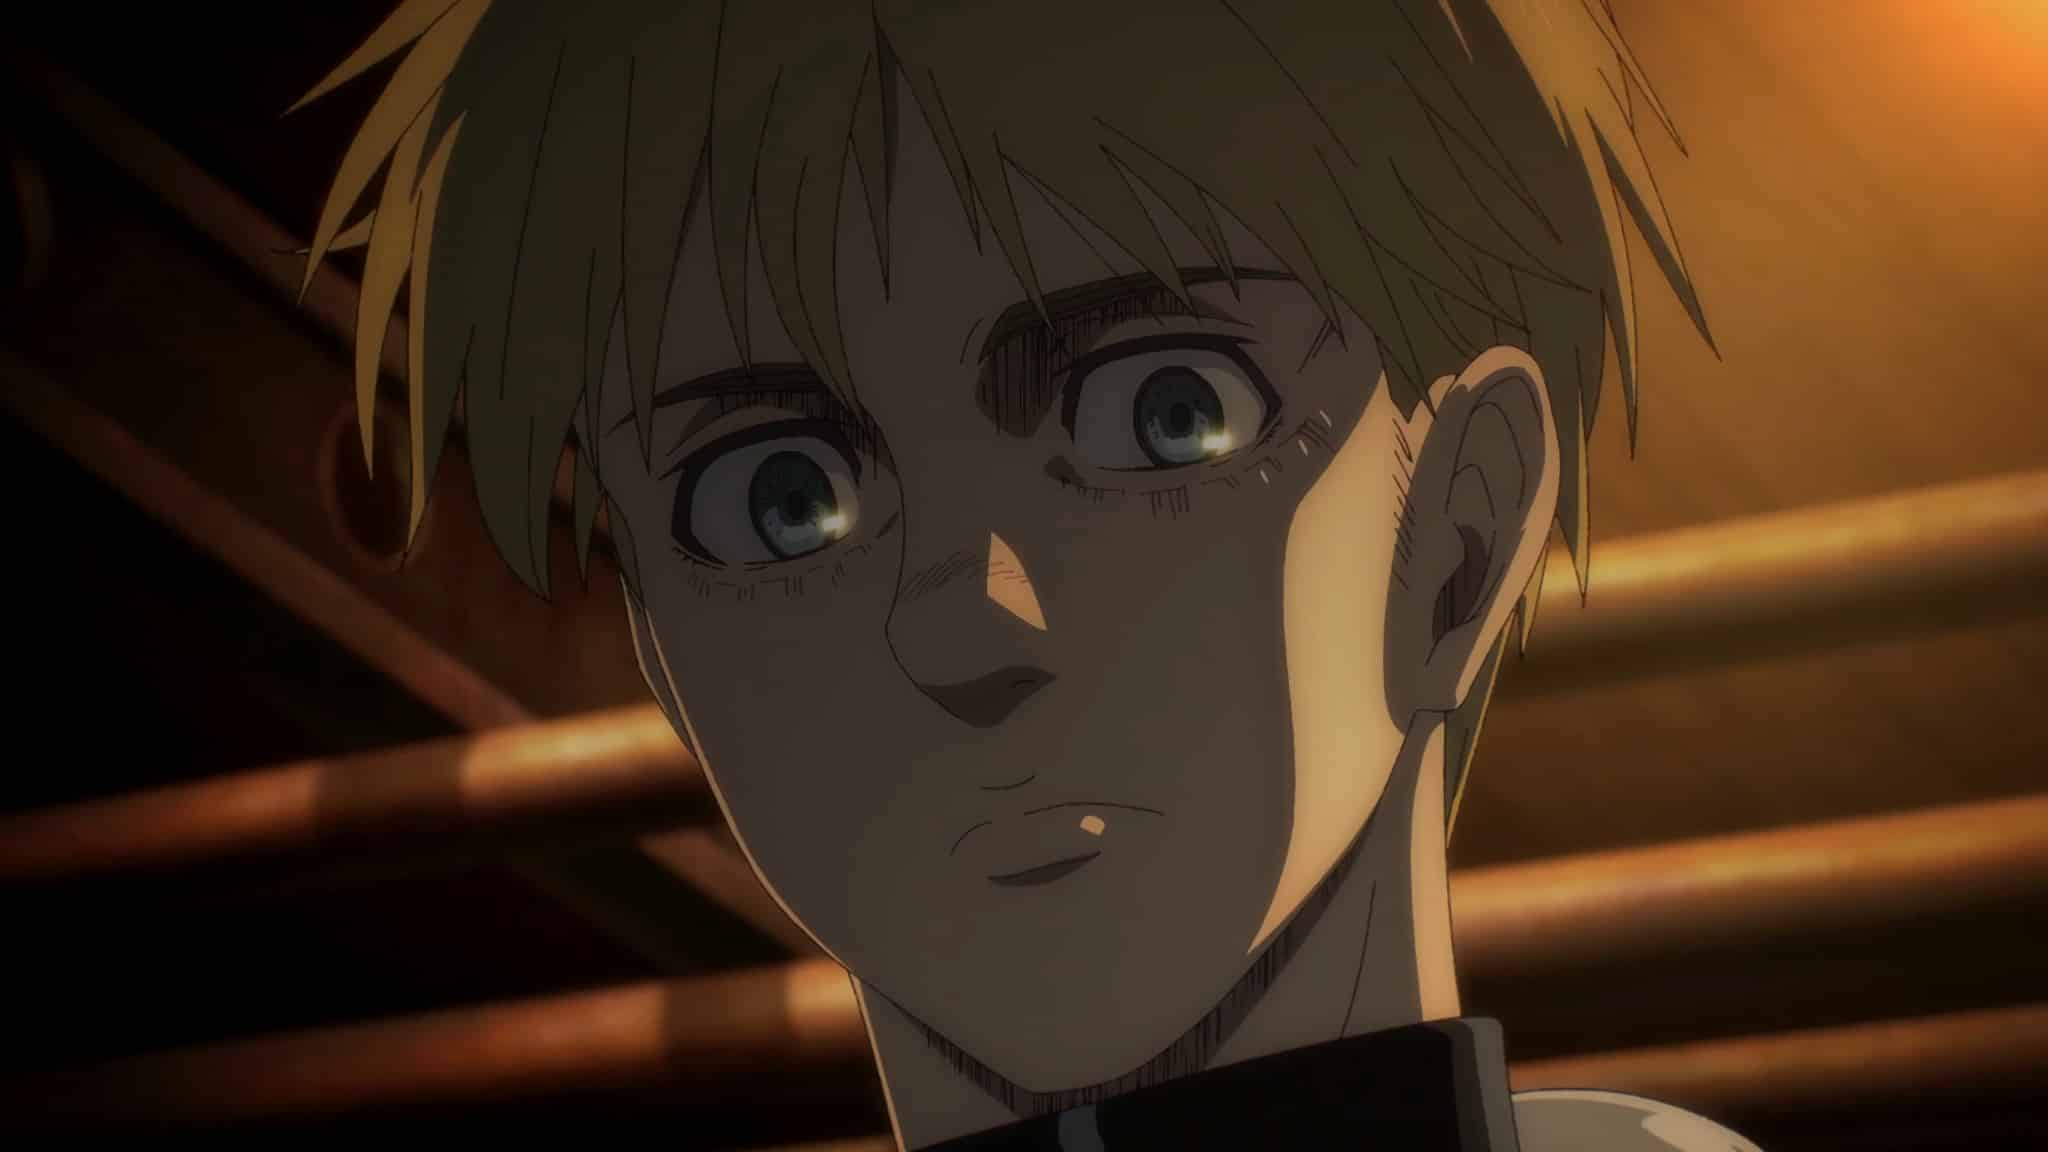 Armin Arlert dans notre top 15 des meilleurs personnages de anime Shingeki no Kyojin